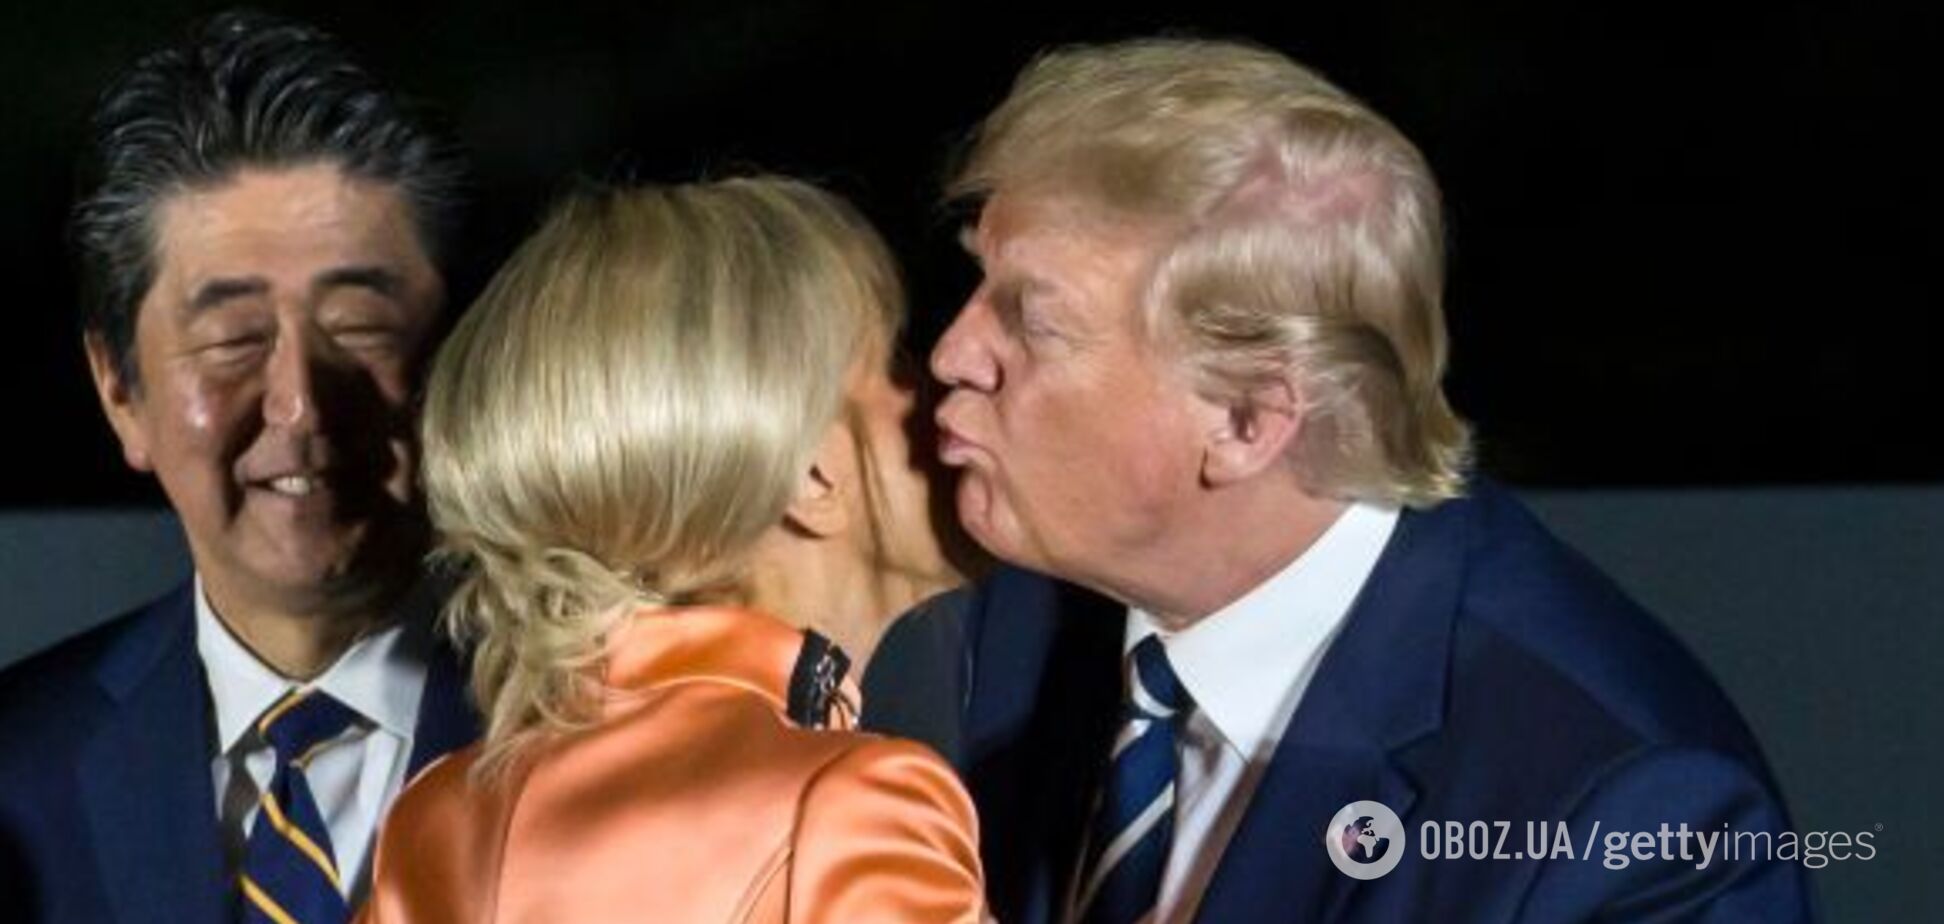 На саммите G20 Трамп целовался с чужой женой: момент попал на видео